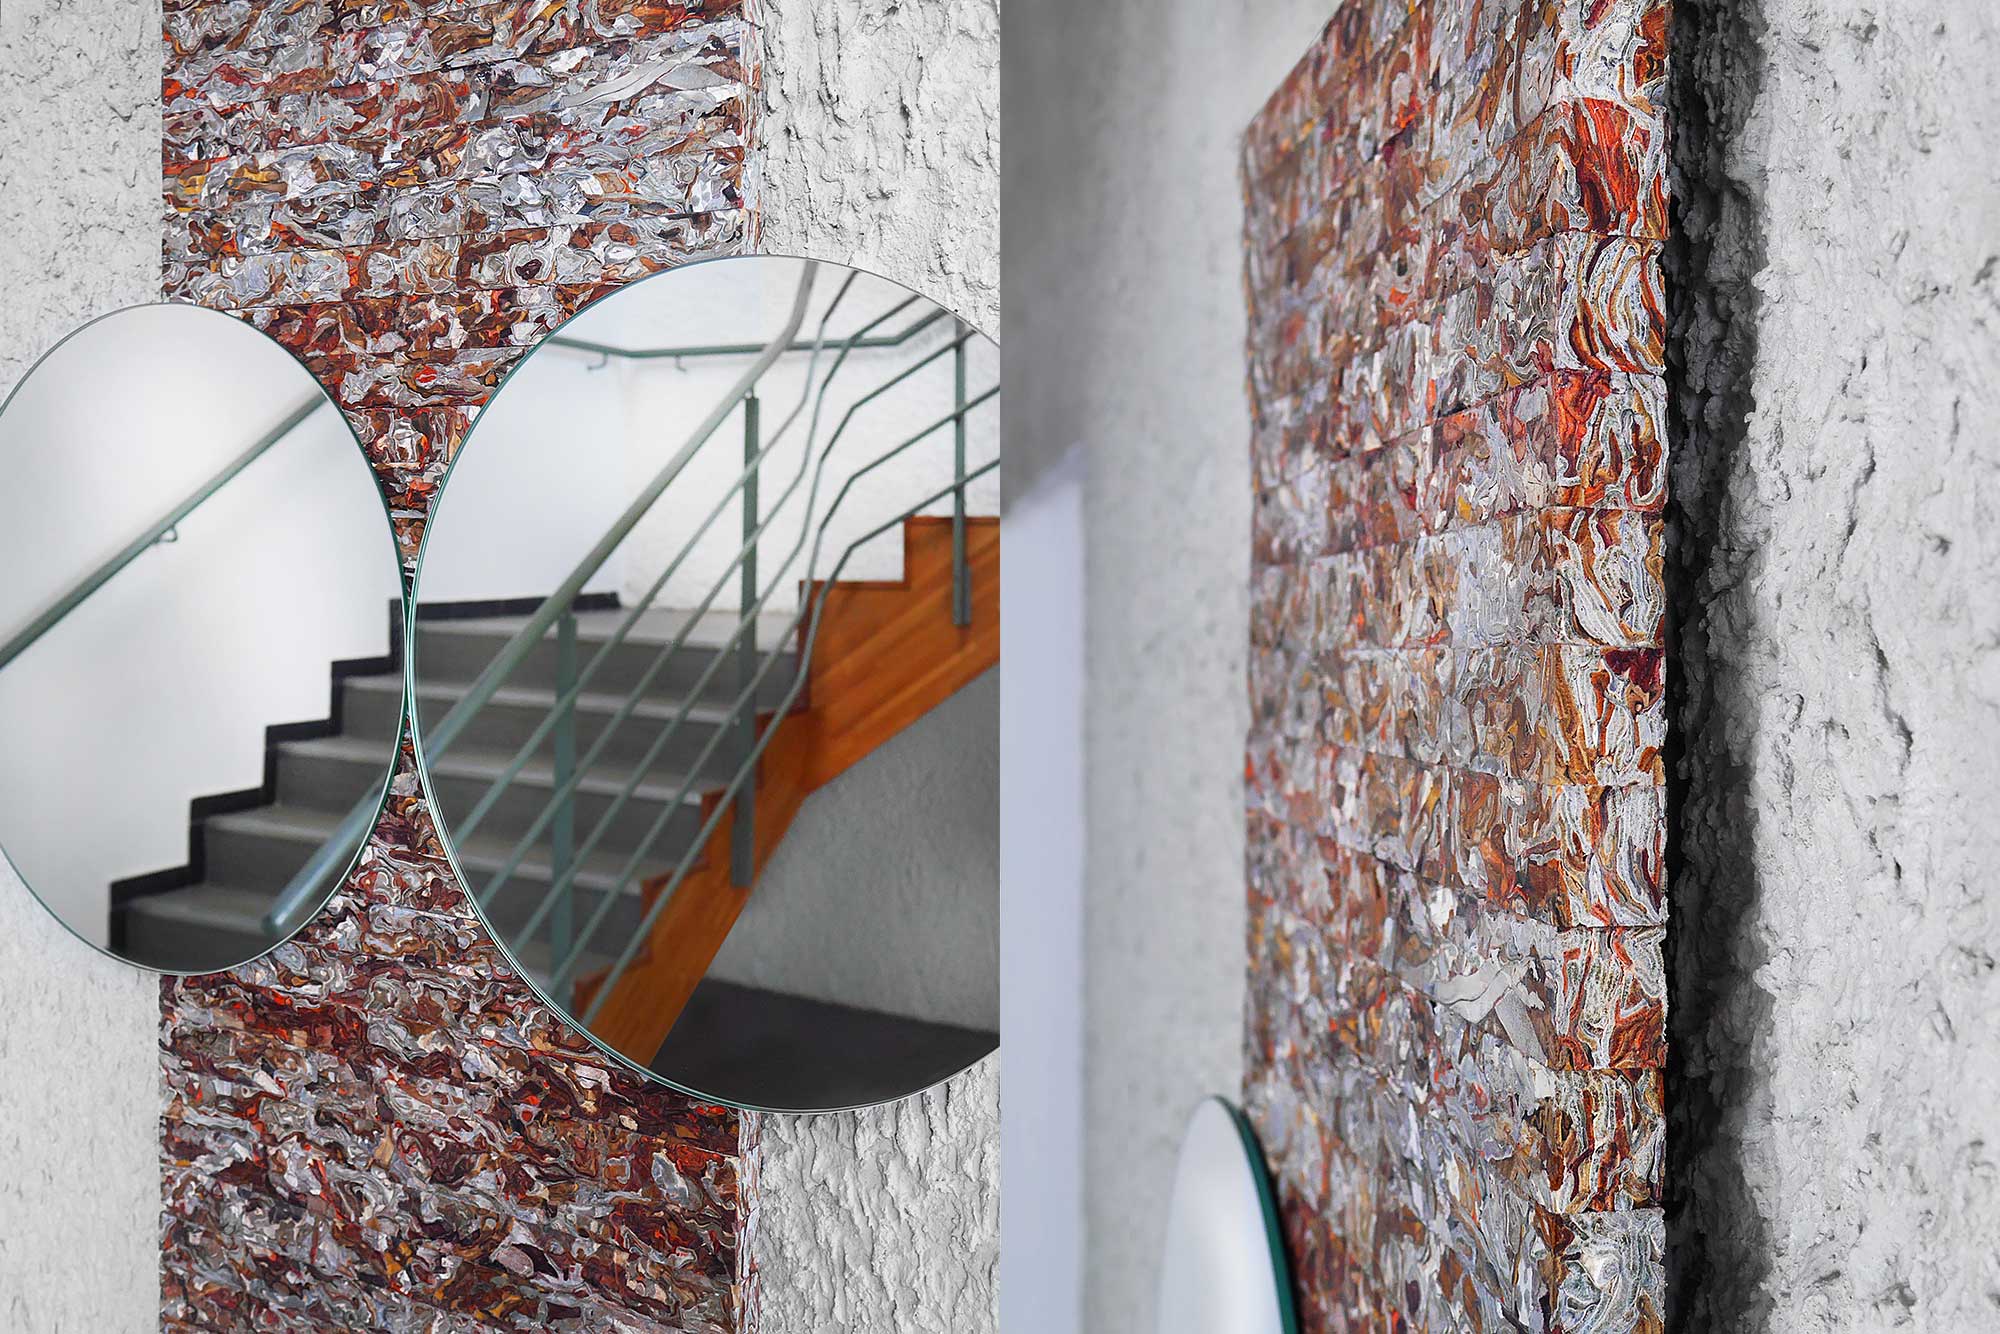 Structural Skin miroir reconstitué par Jorge Penadés